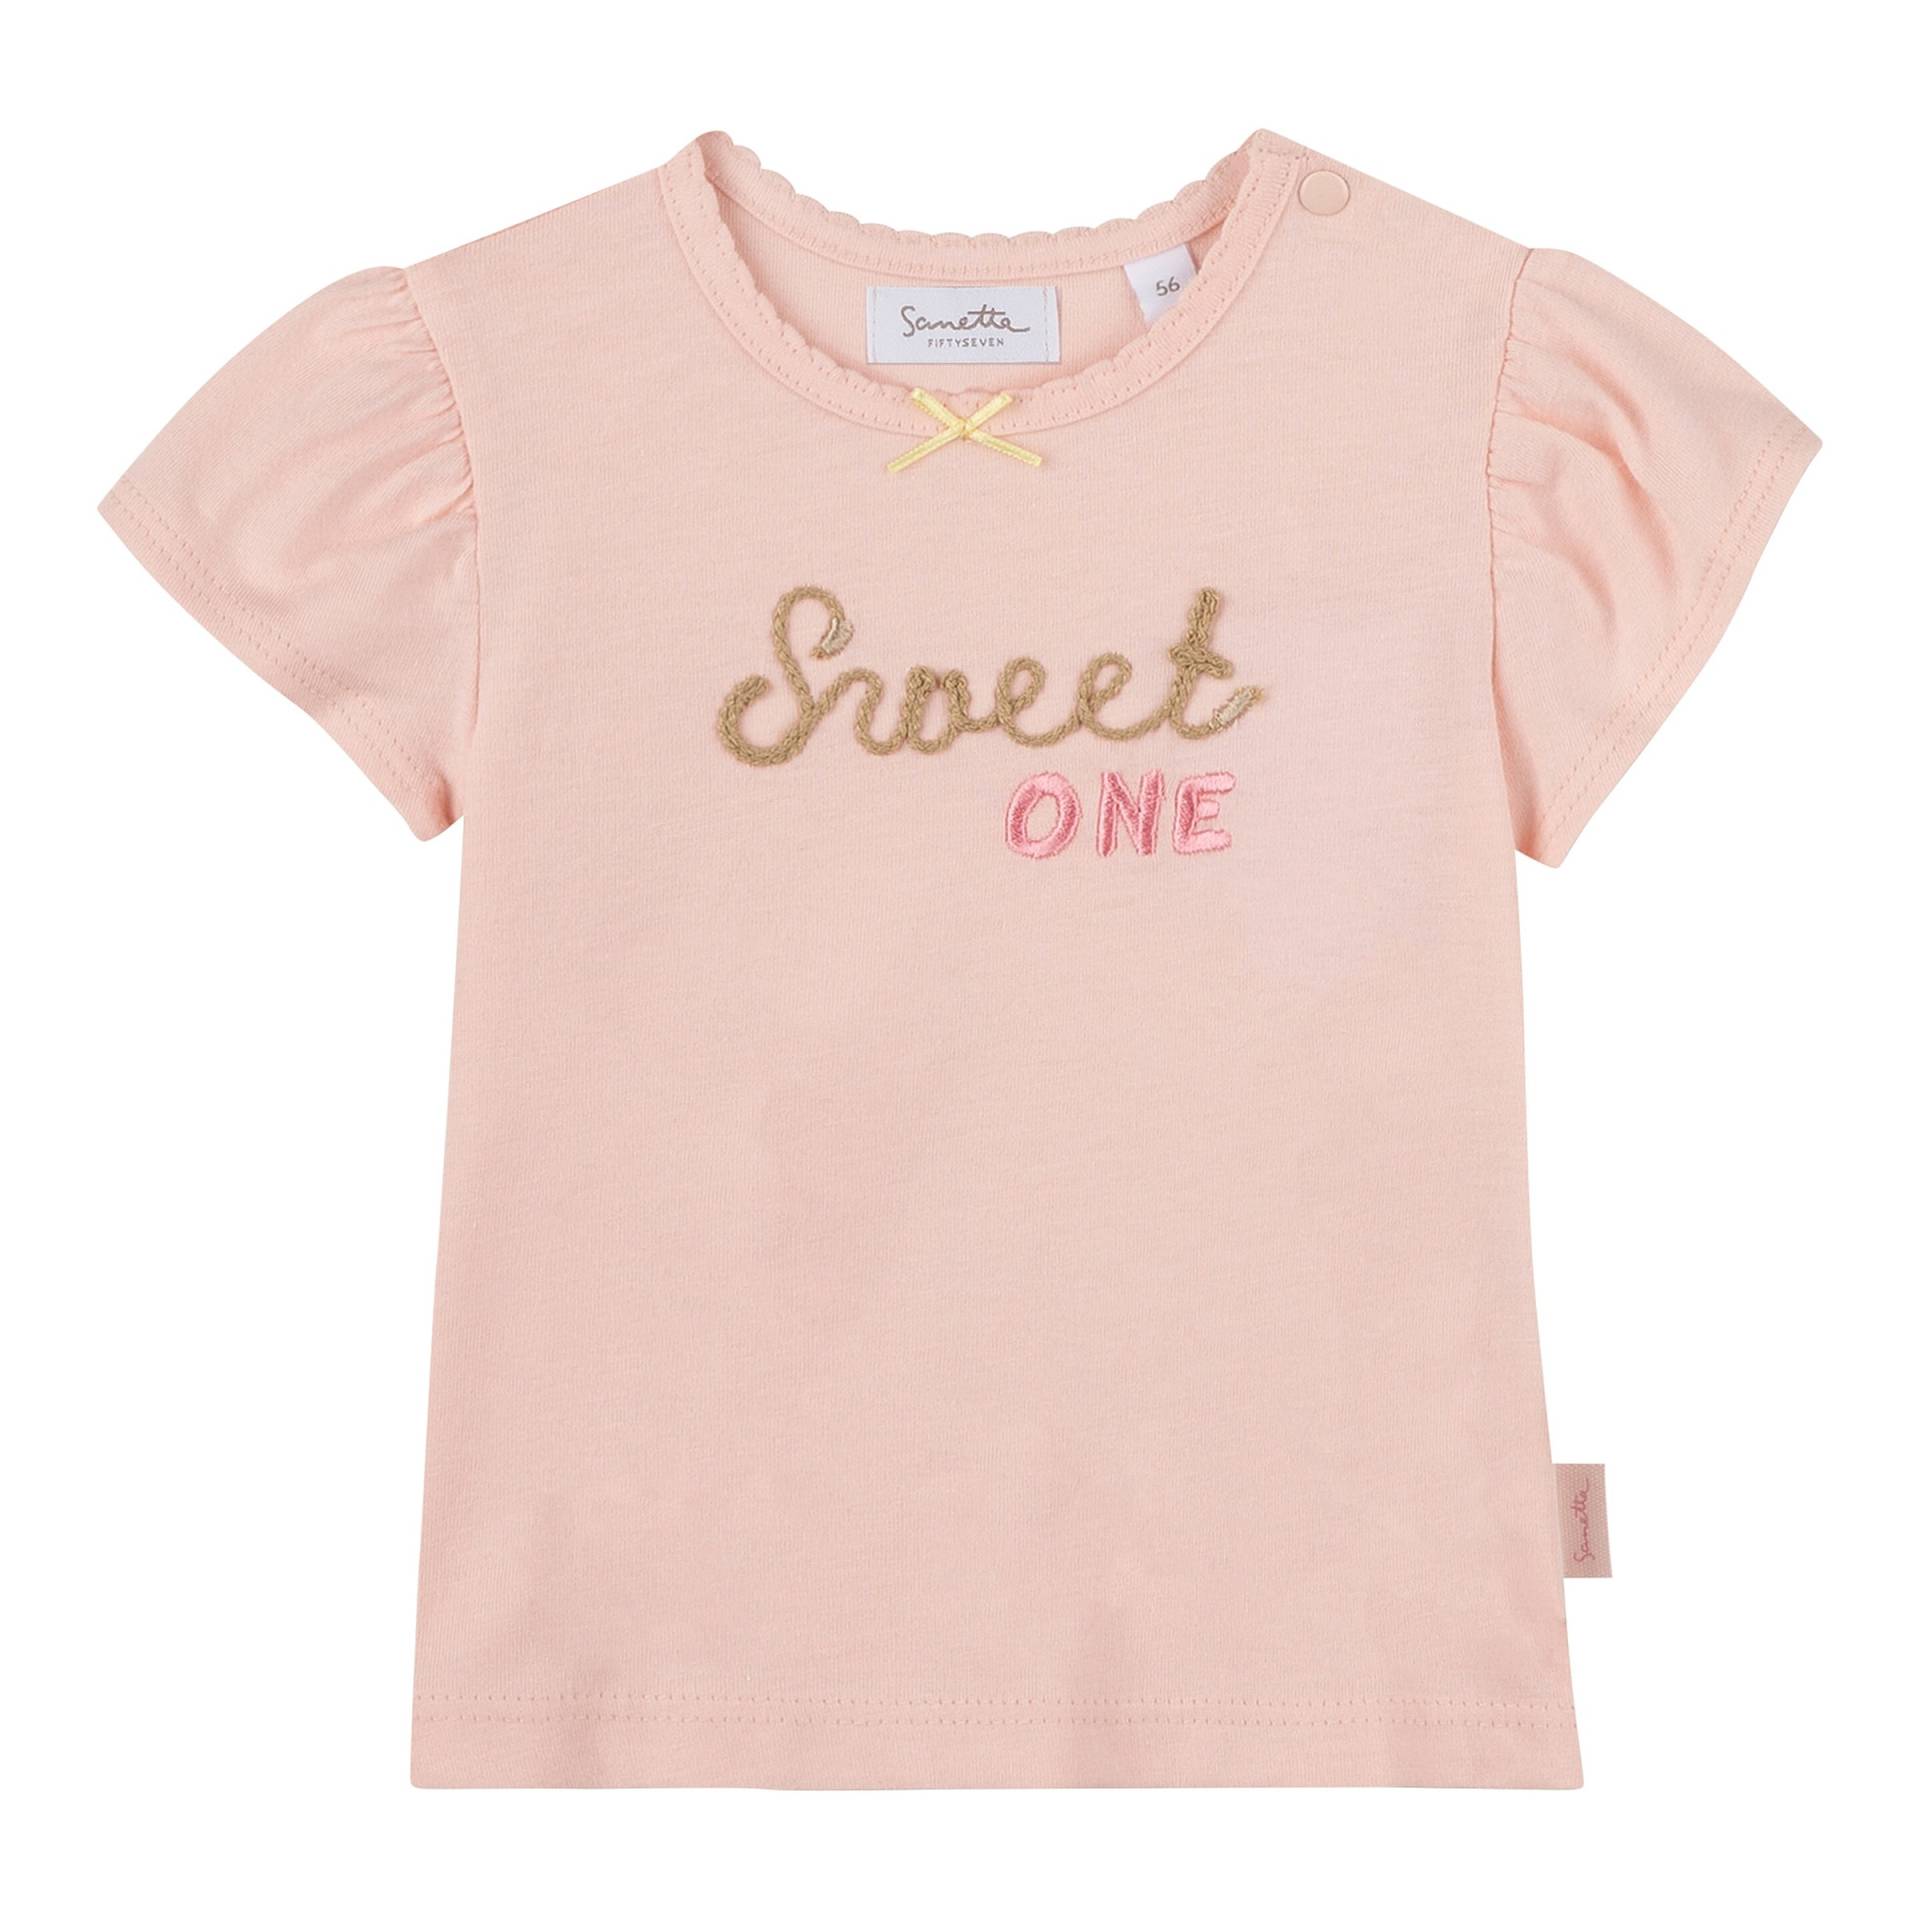 T-Shirt Sweet One von Sanetta Fiftyseven